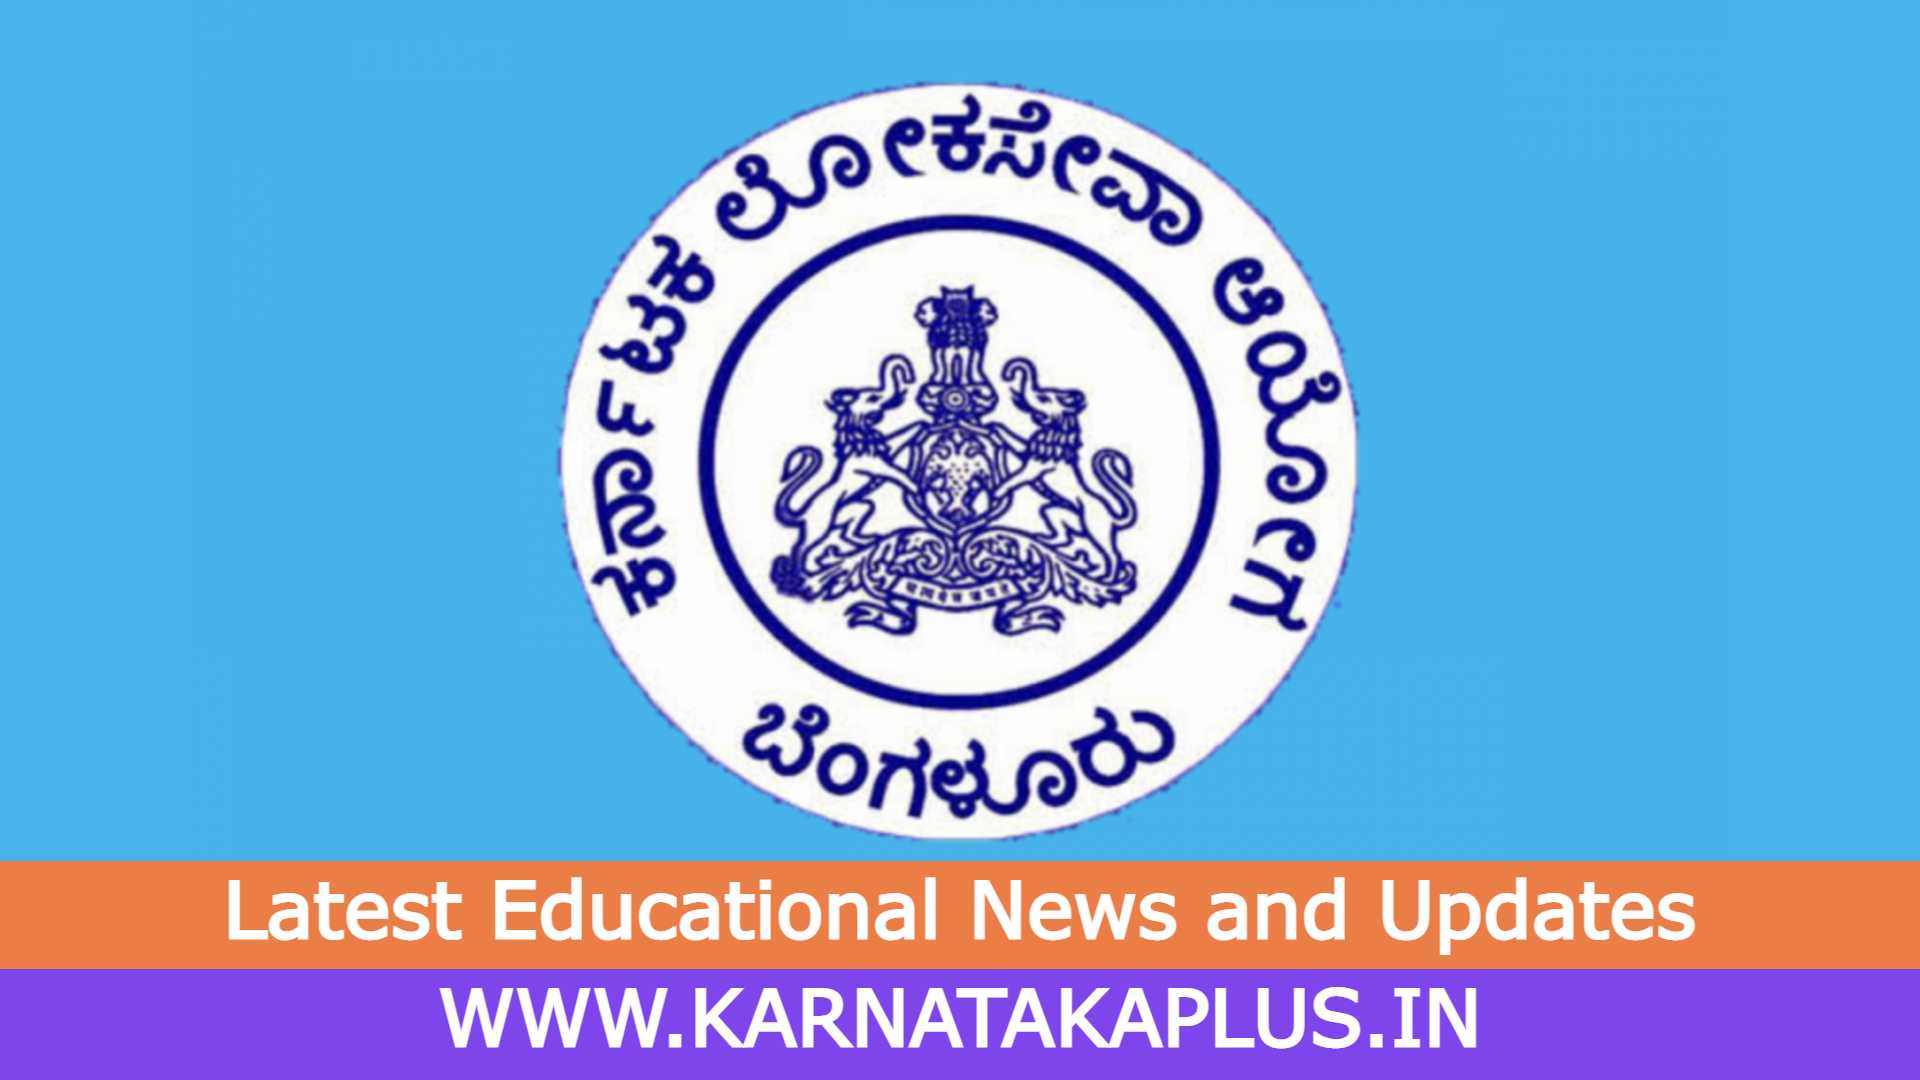 Karnataka Plus 3 KPSC Exam Hall Ticket